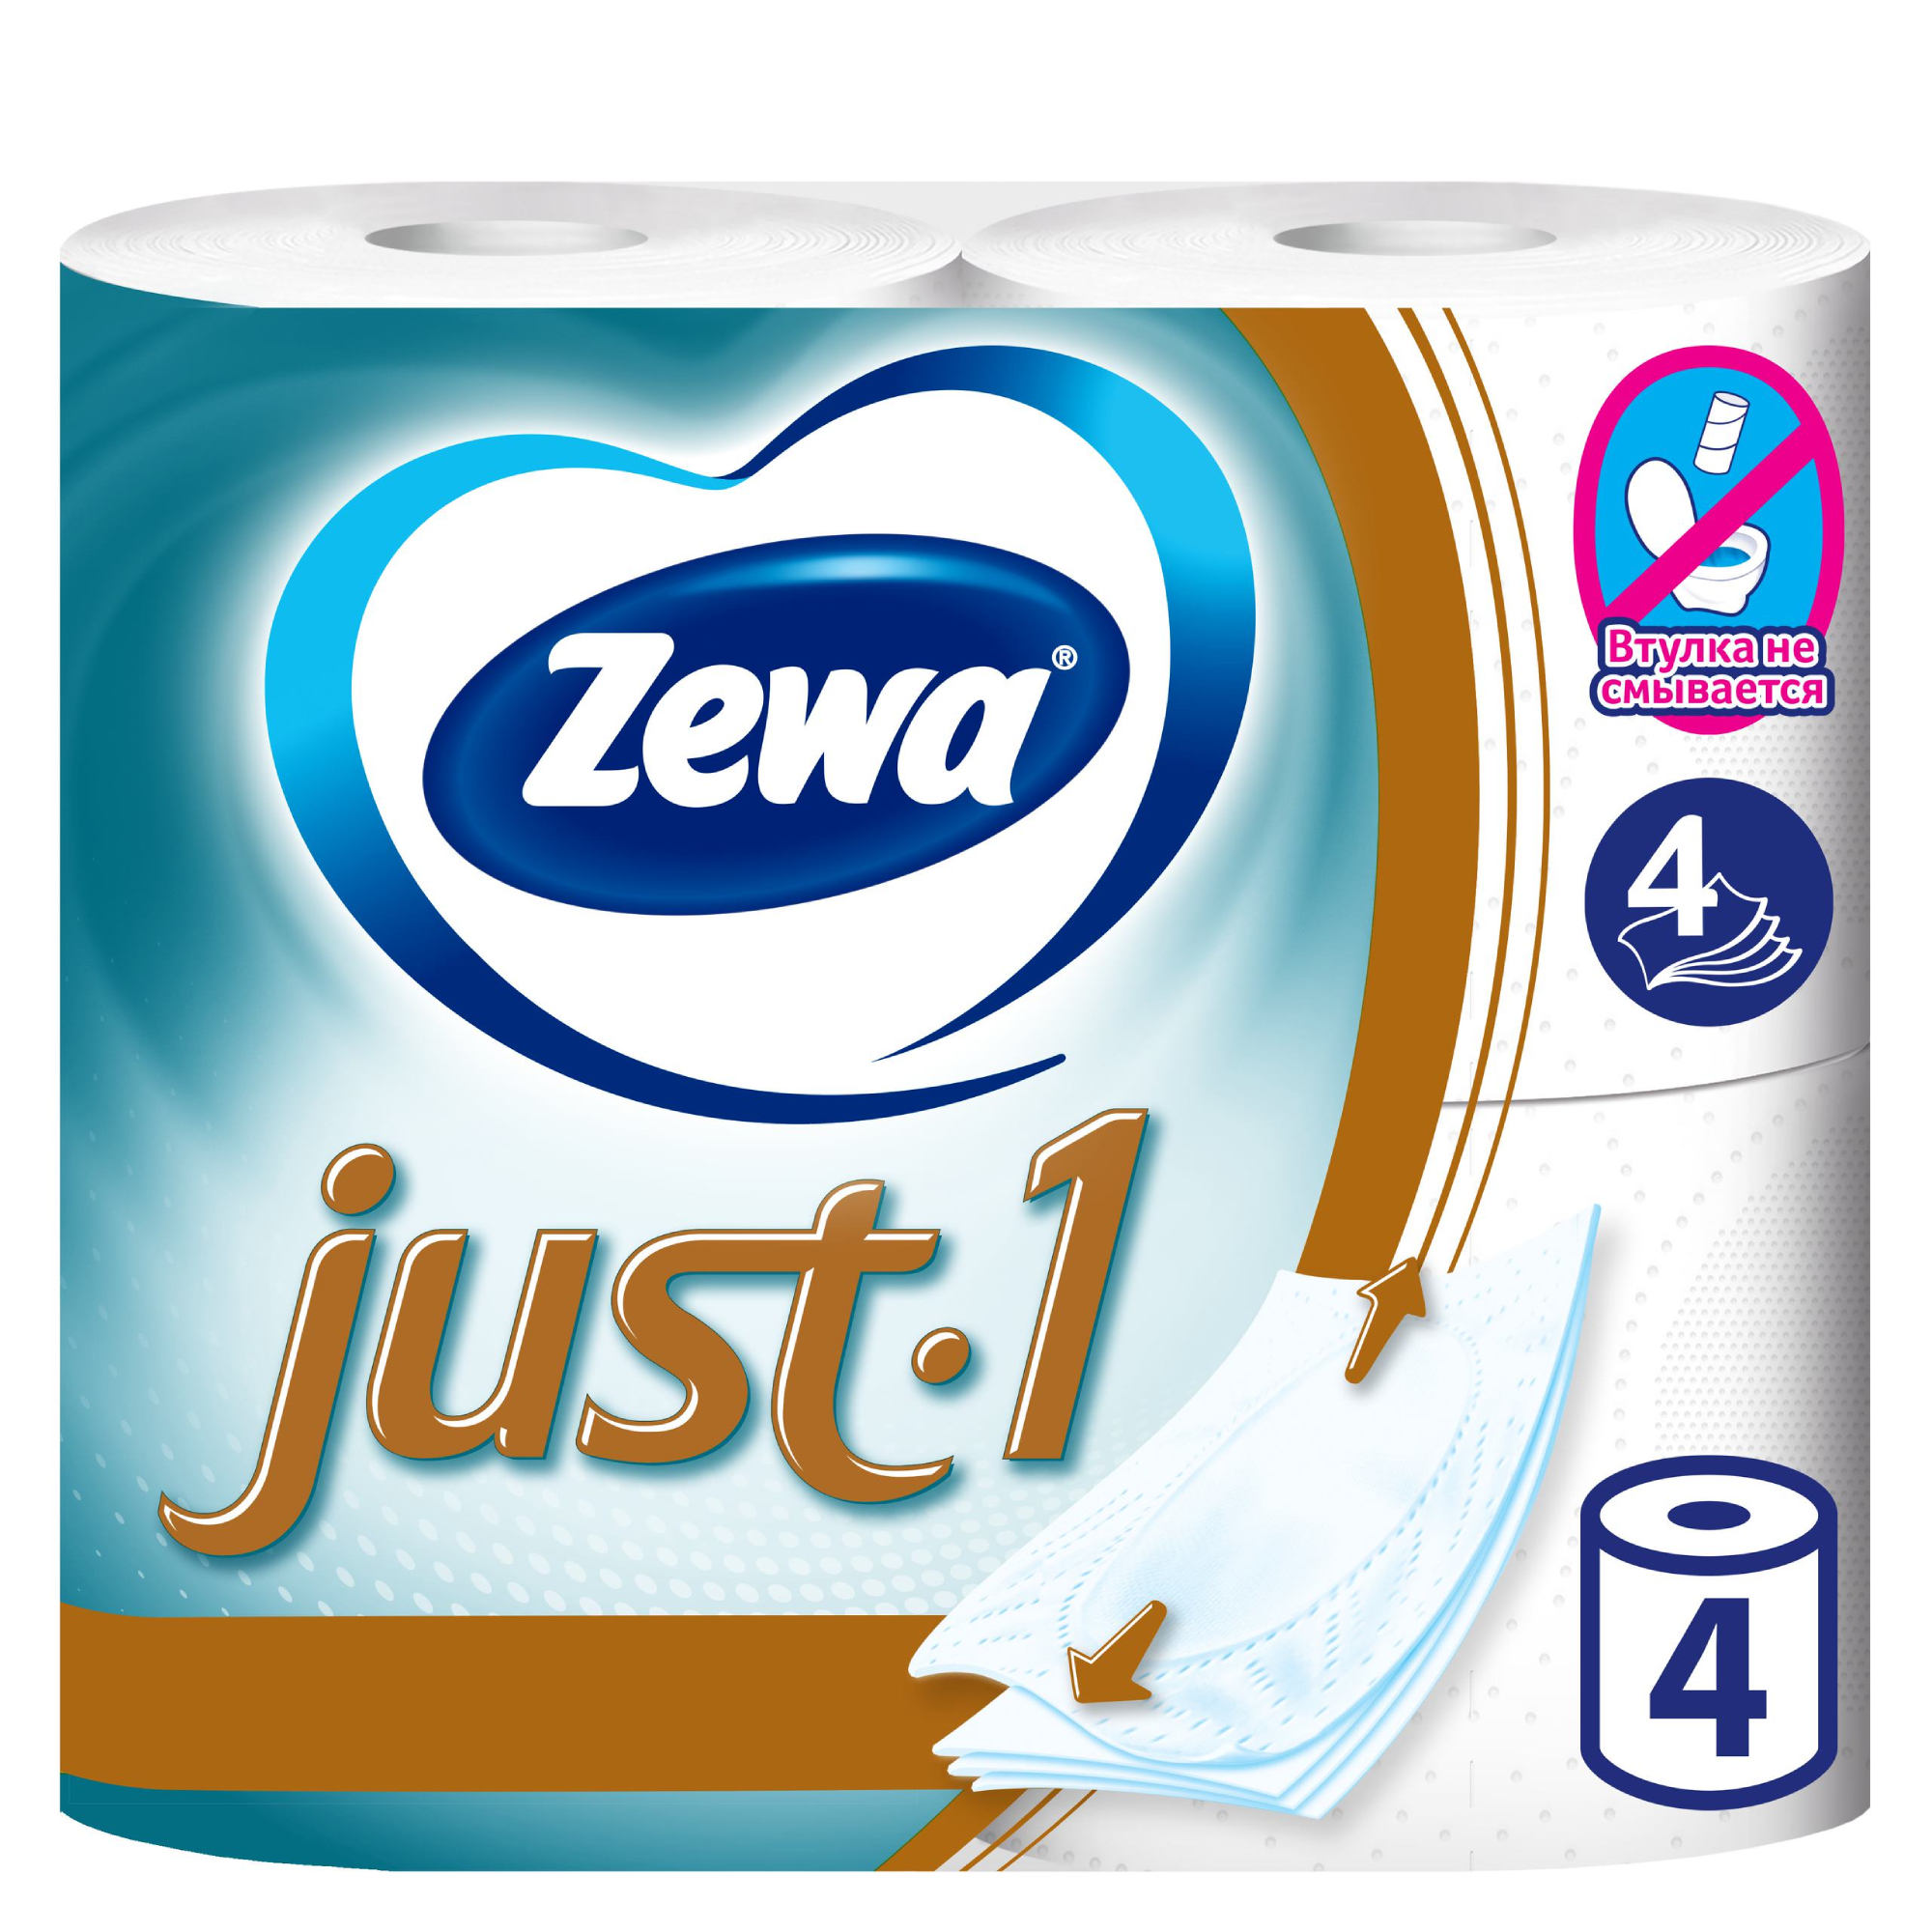 Туалетная бумага Zewa Just 1, 4 слоя, 4 рулона туалетная бумага zewa just1 4 слоя 4 рулона